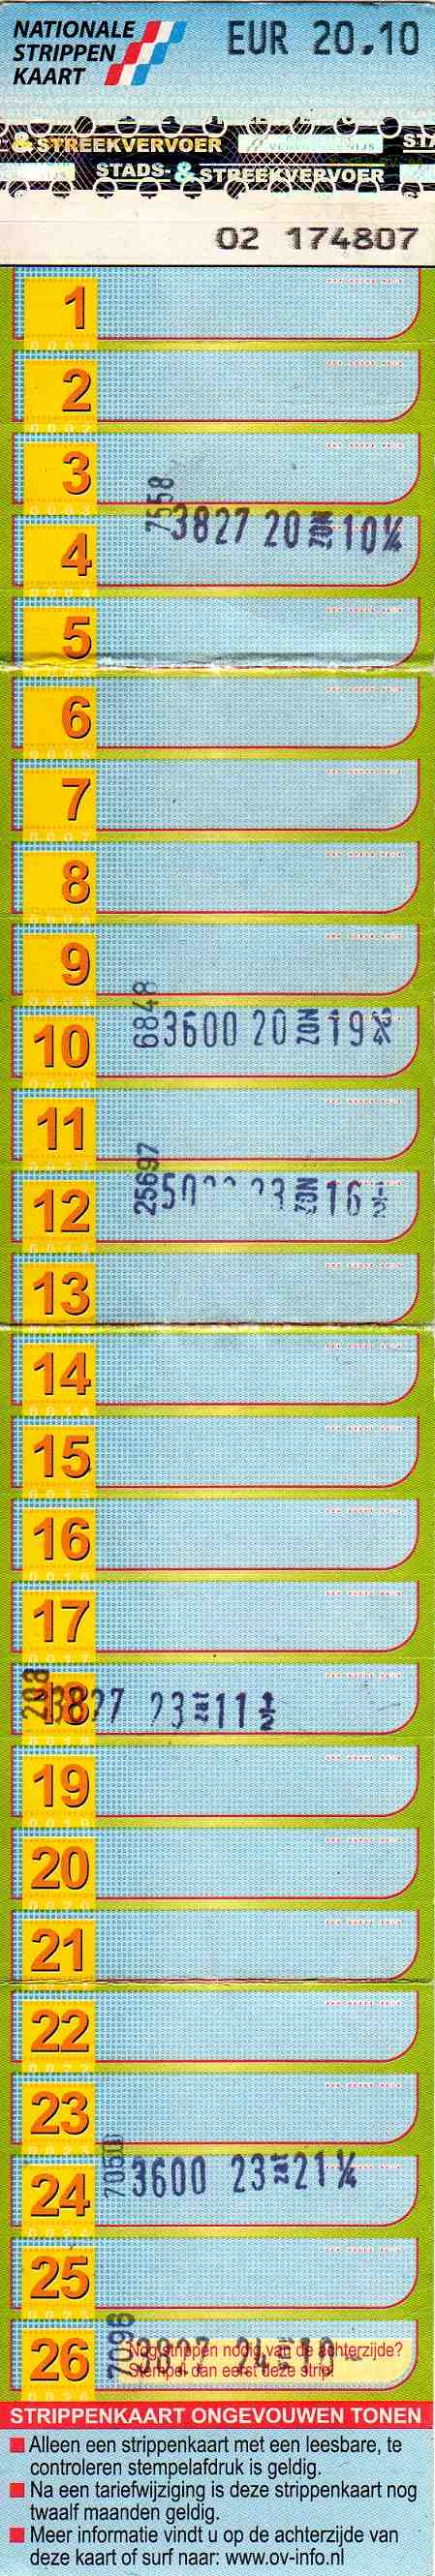 45-strip ticket (front)